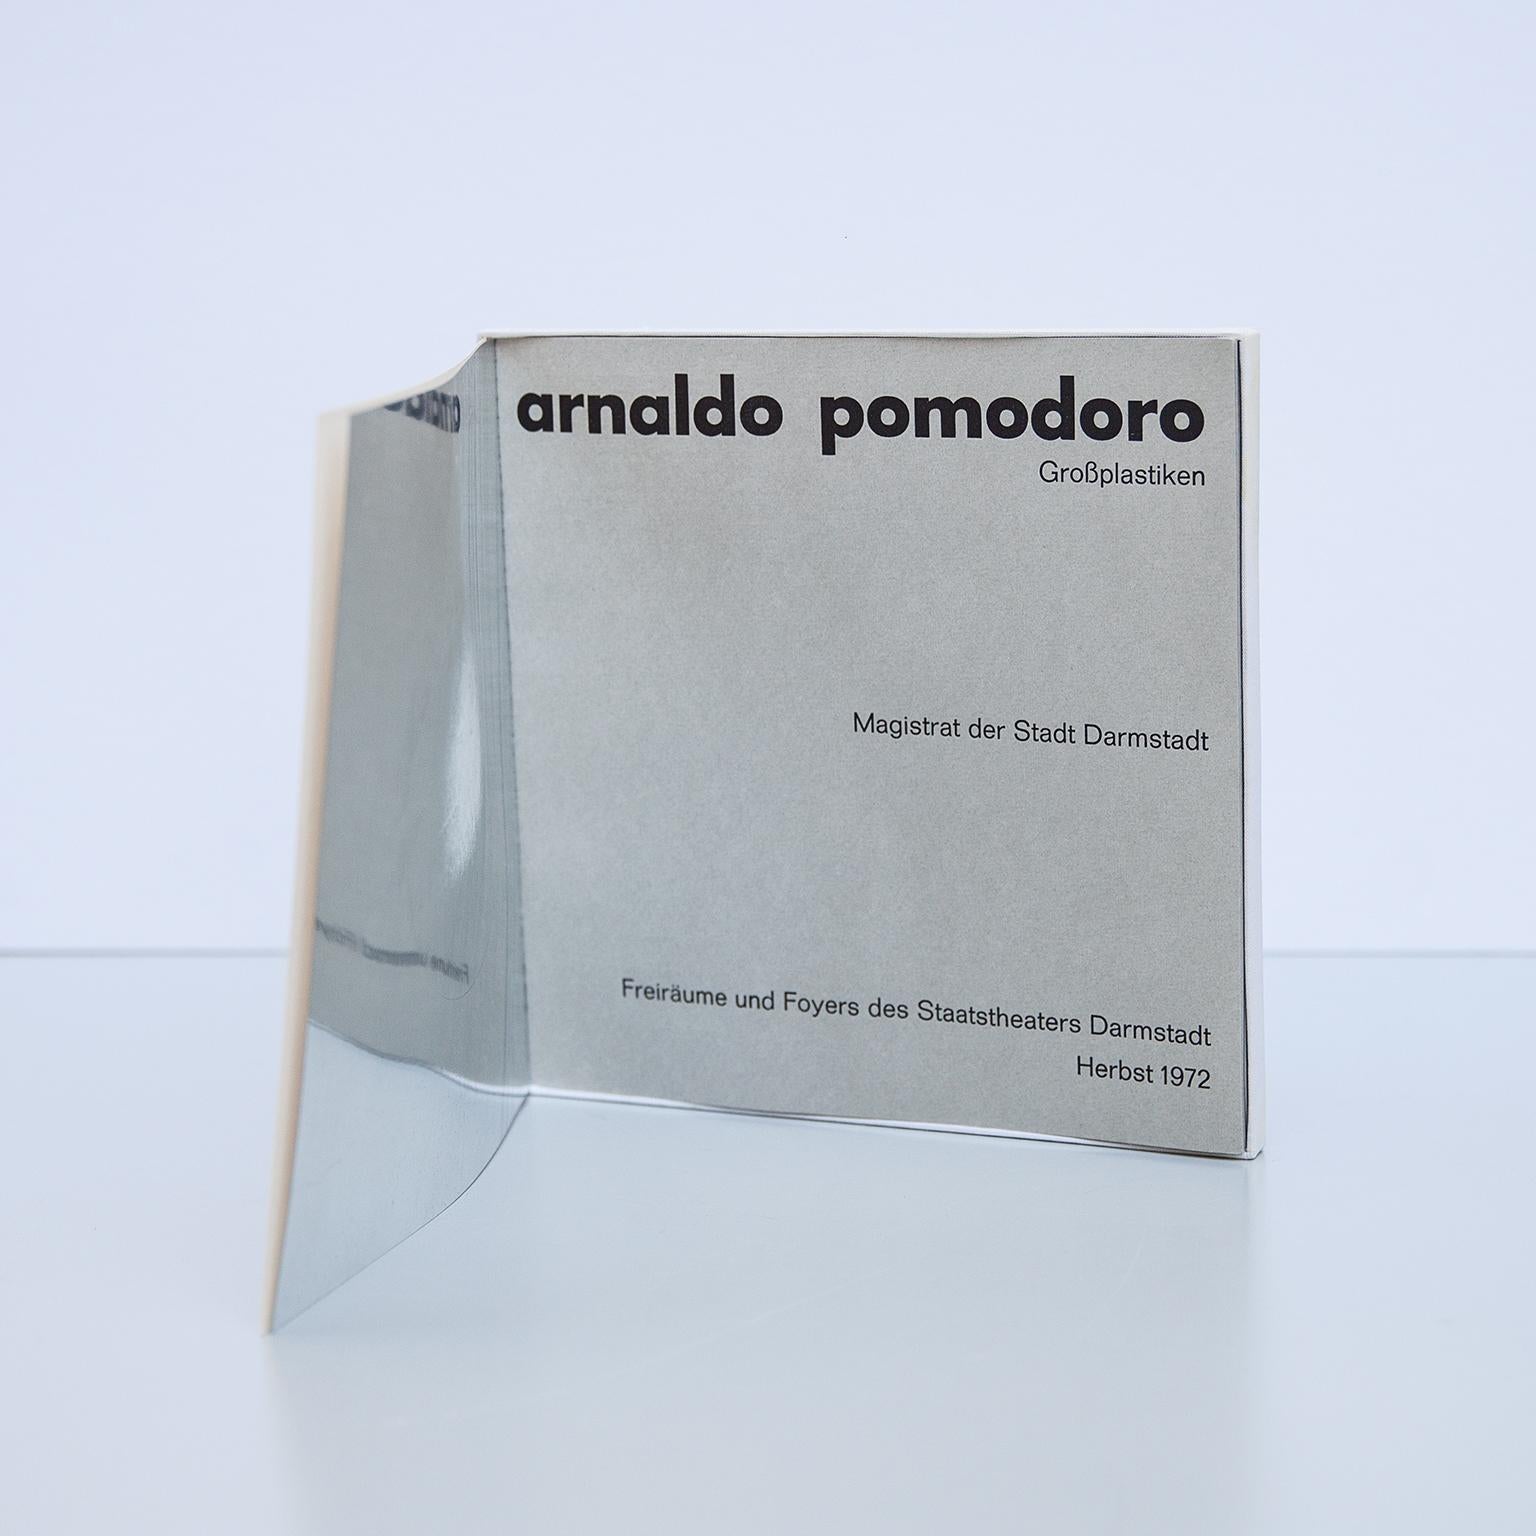 Fiberglass Arnaldo Pomodoro Silver Plated Disk Art Object 1972